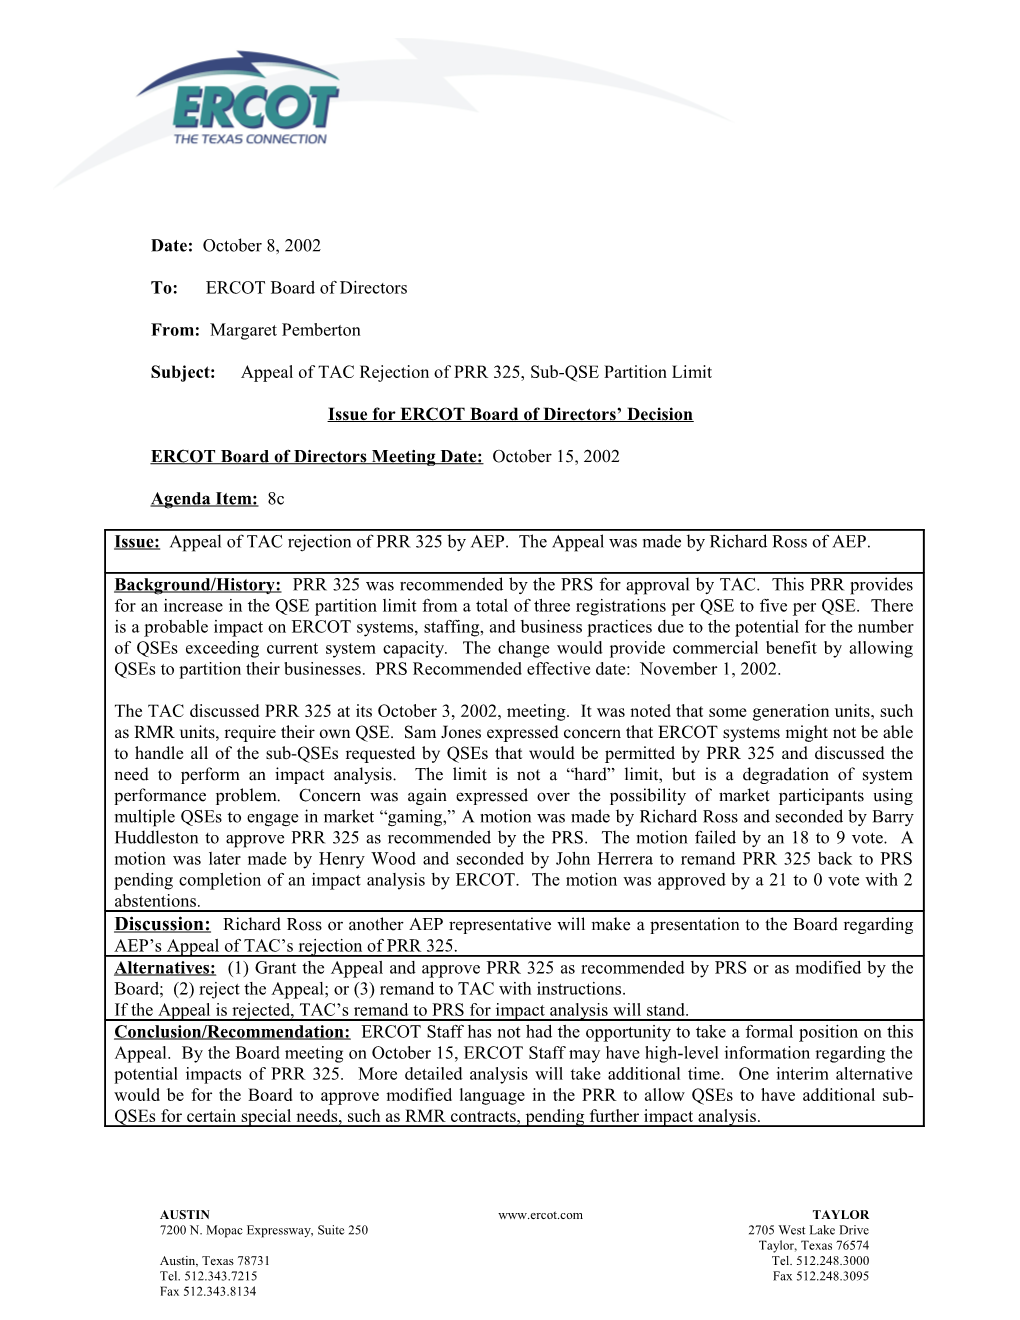 Subject:Appeal of TAC Rejection of PRR 325, Sub-QSE Partition Limit